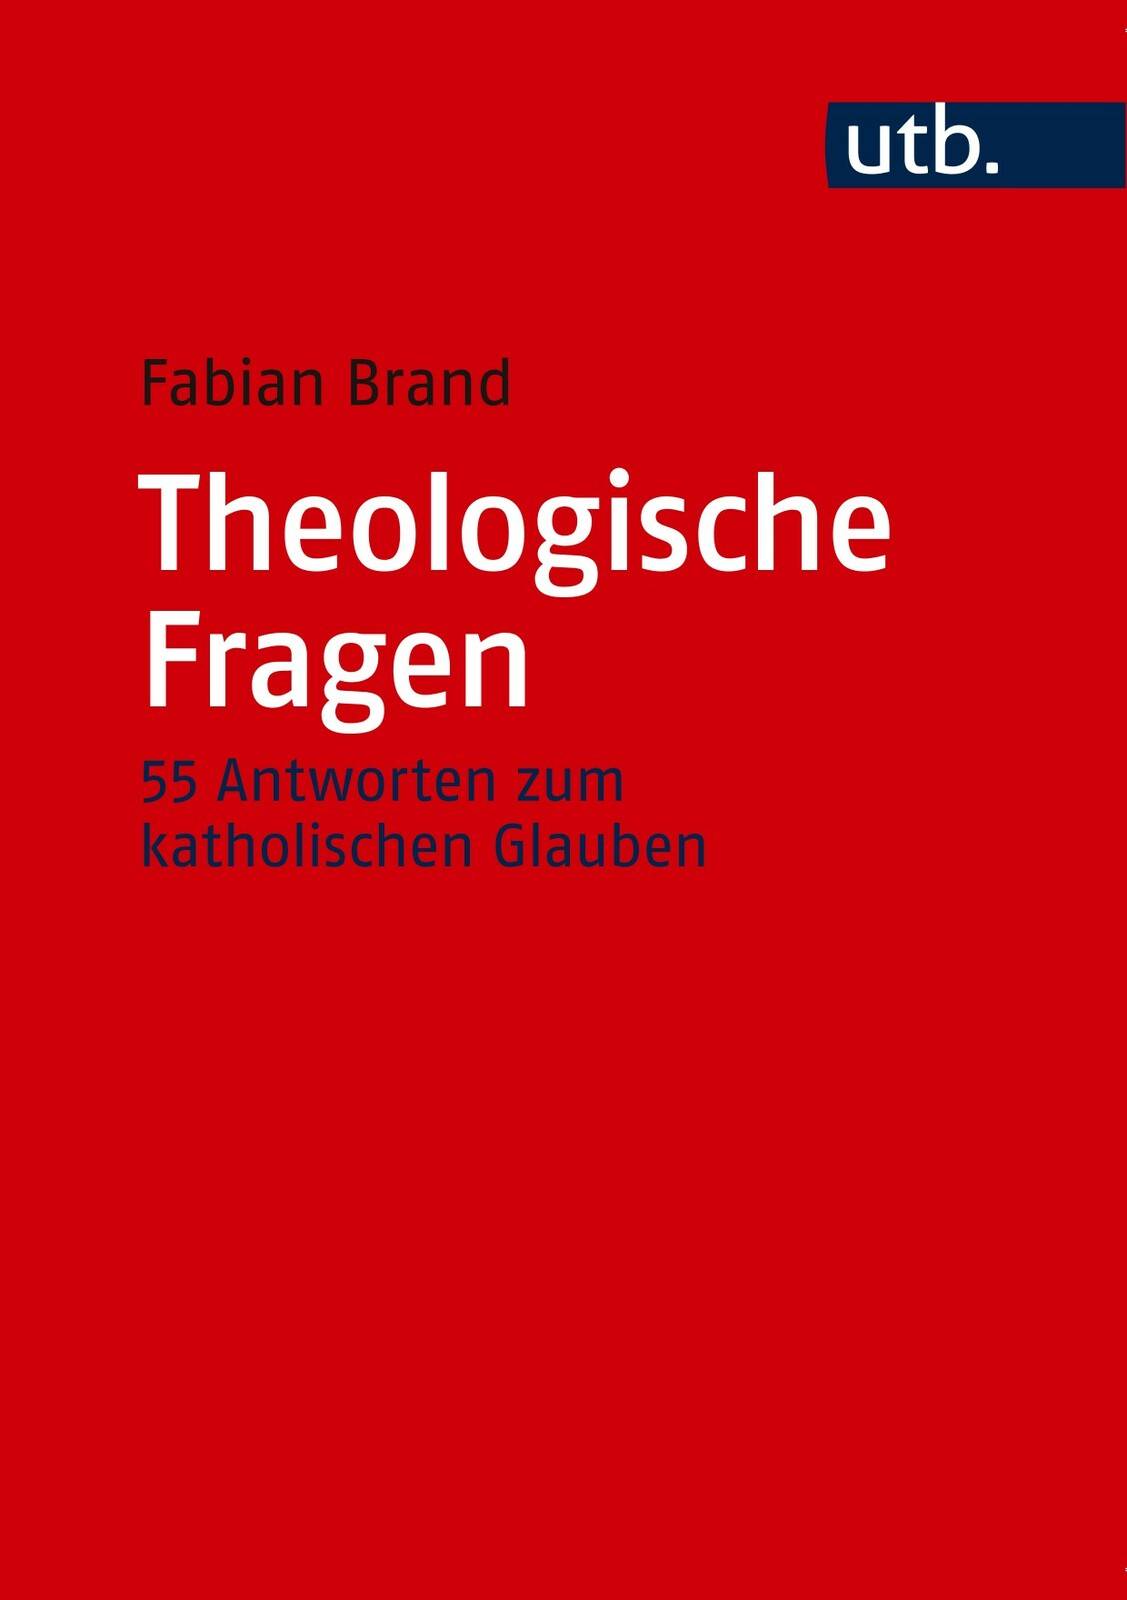 theologische_fragen._zycuv.jpg